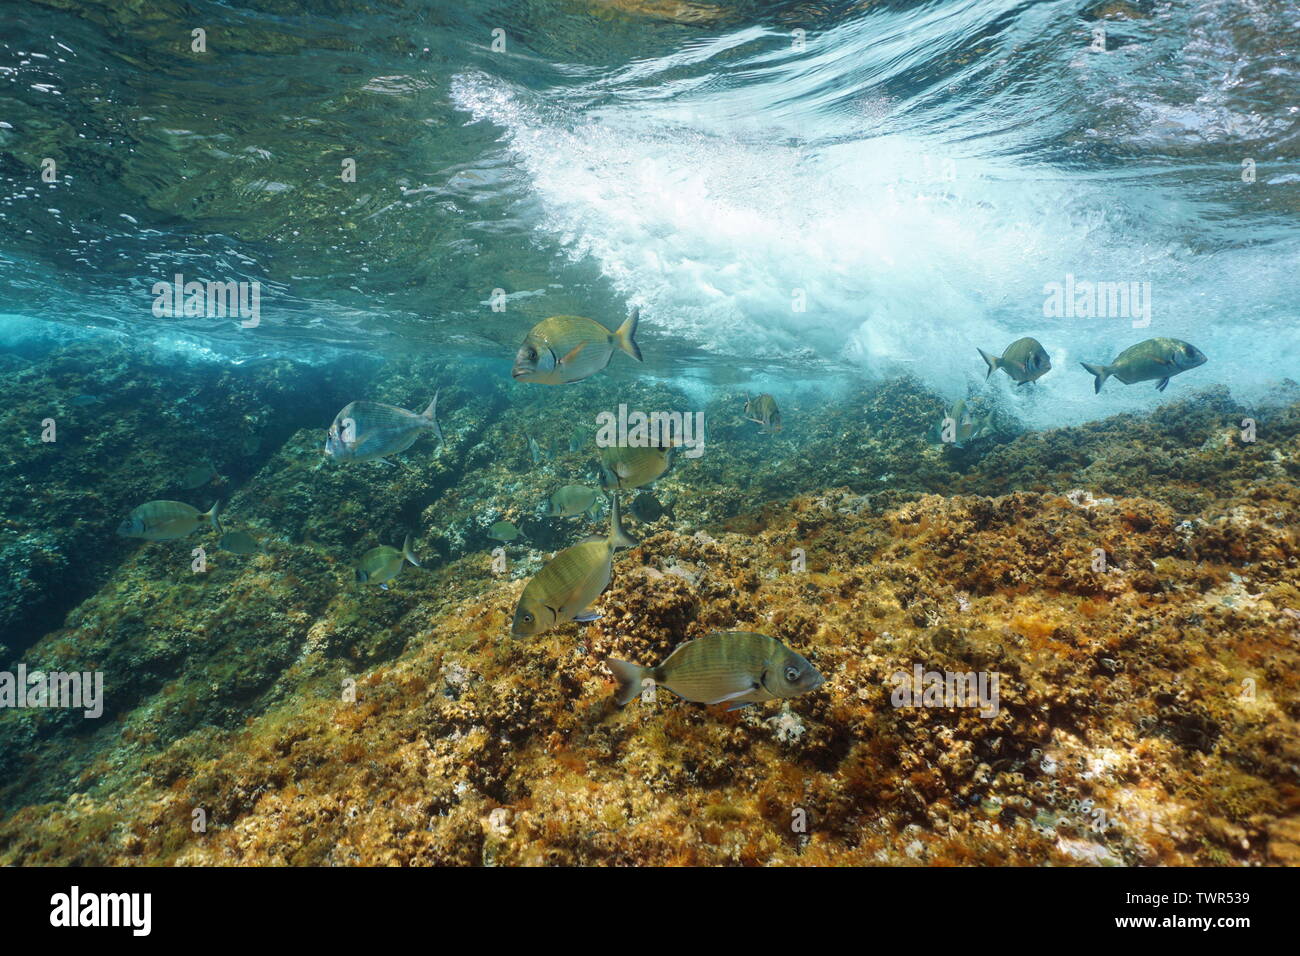 Peces Seabreams con olas rompiendo sobre rocas submarinas en el mar Mediterráneo, la Riviera Francesa, Francia Foto de stock